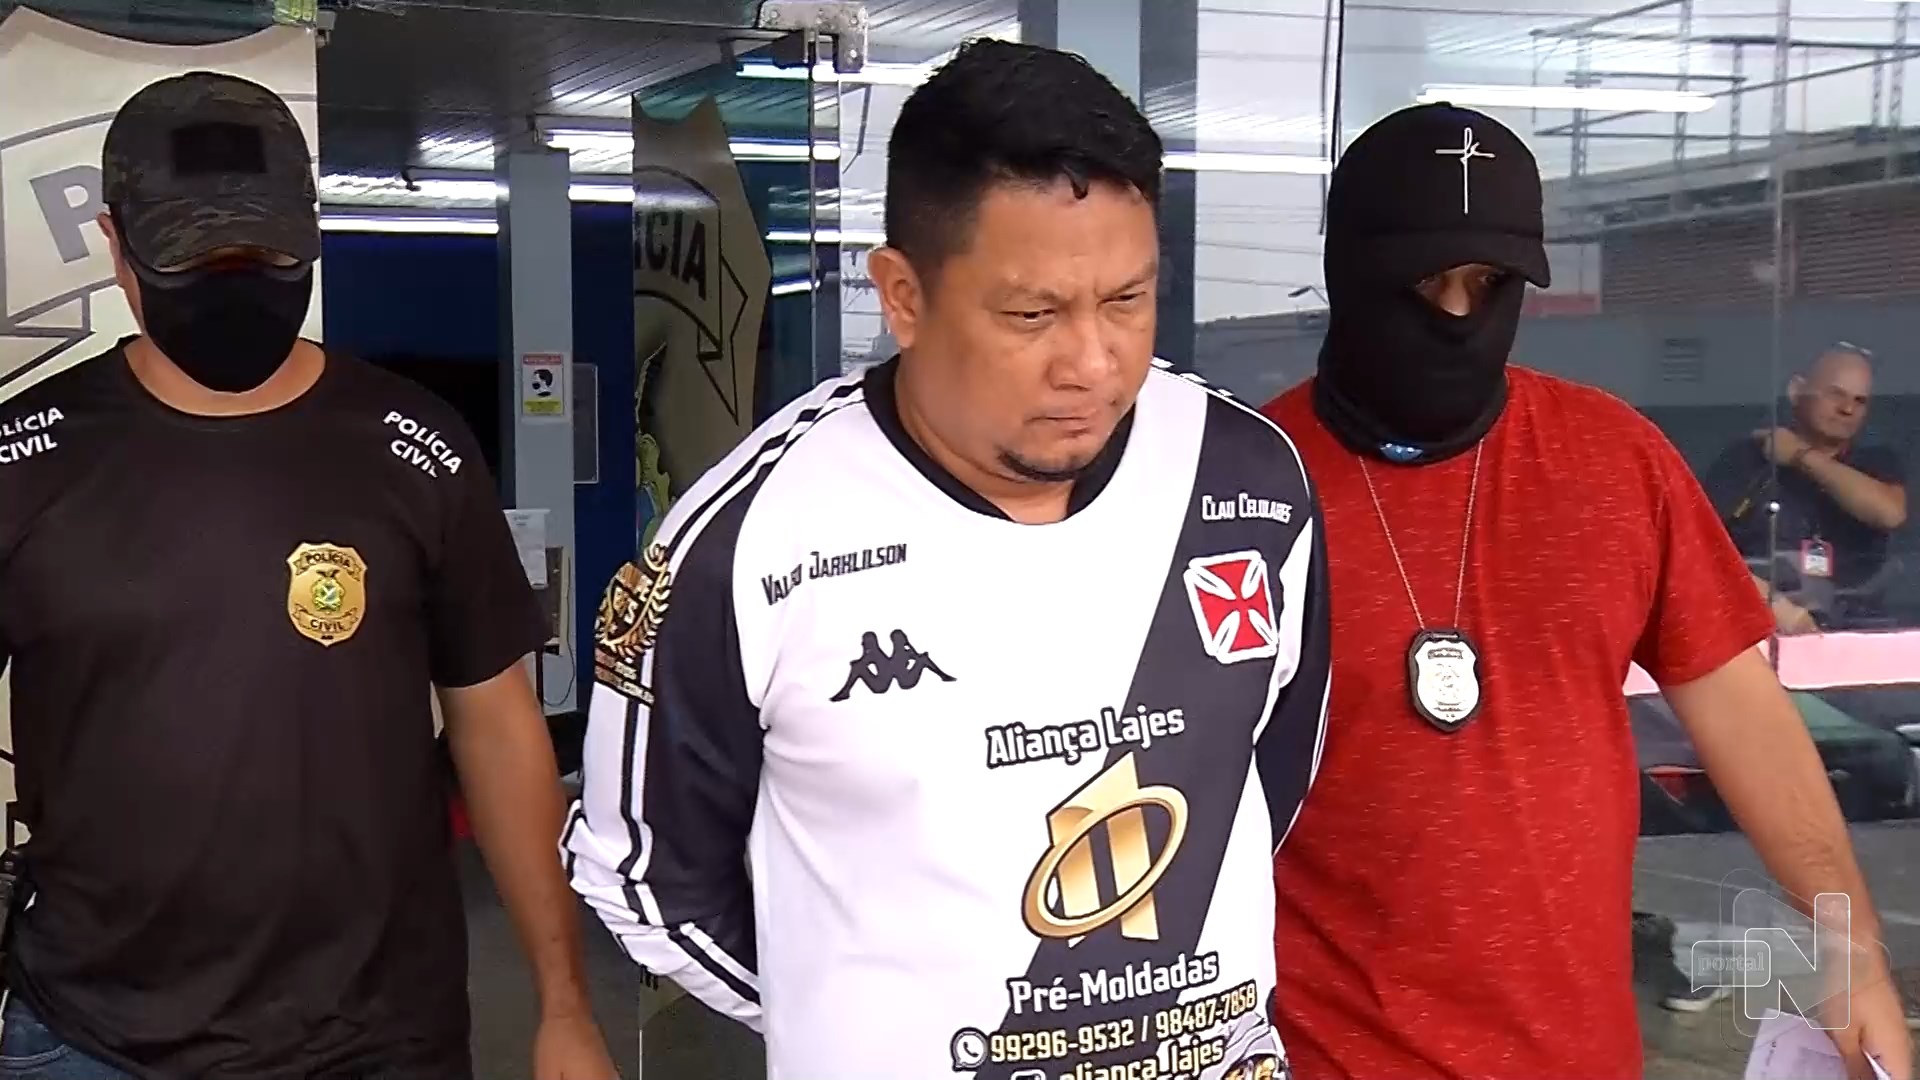 Duas pessoas foram presas suspeitas de assassinato em beco de Manaus